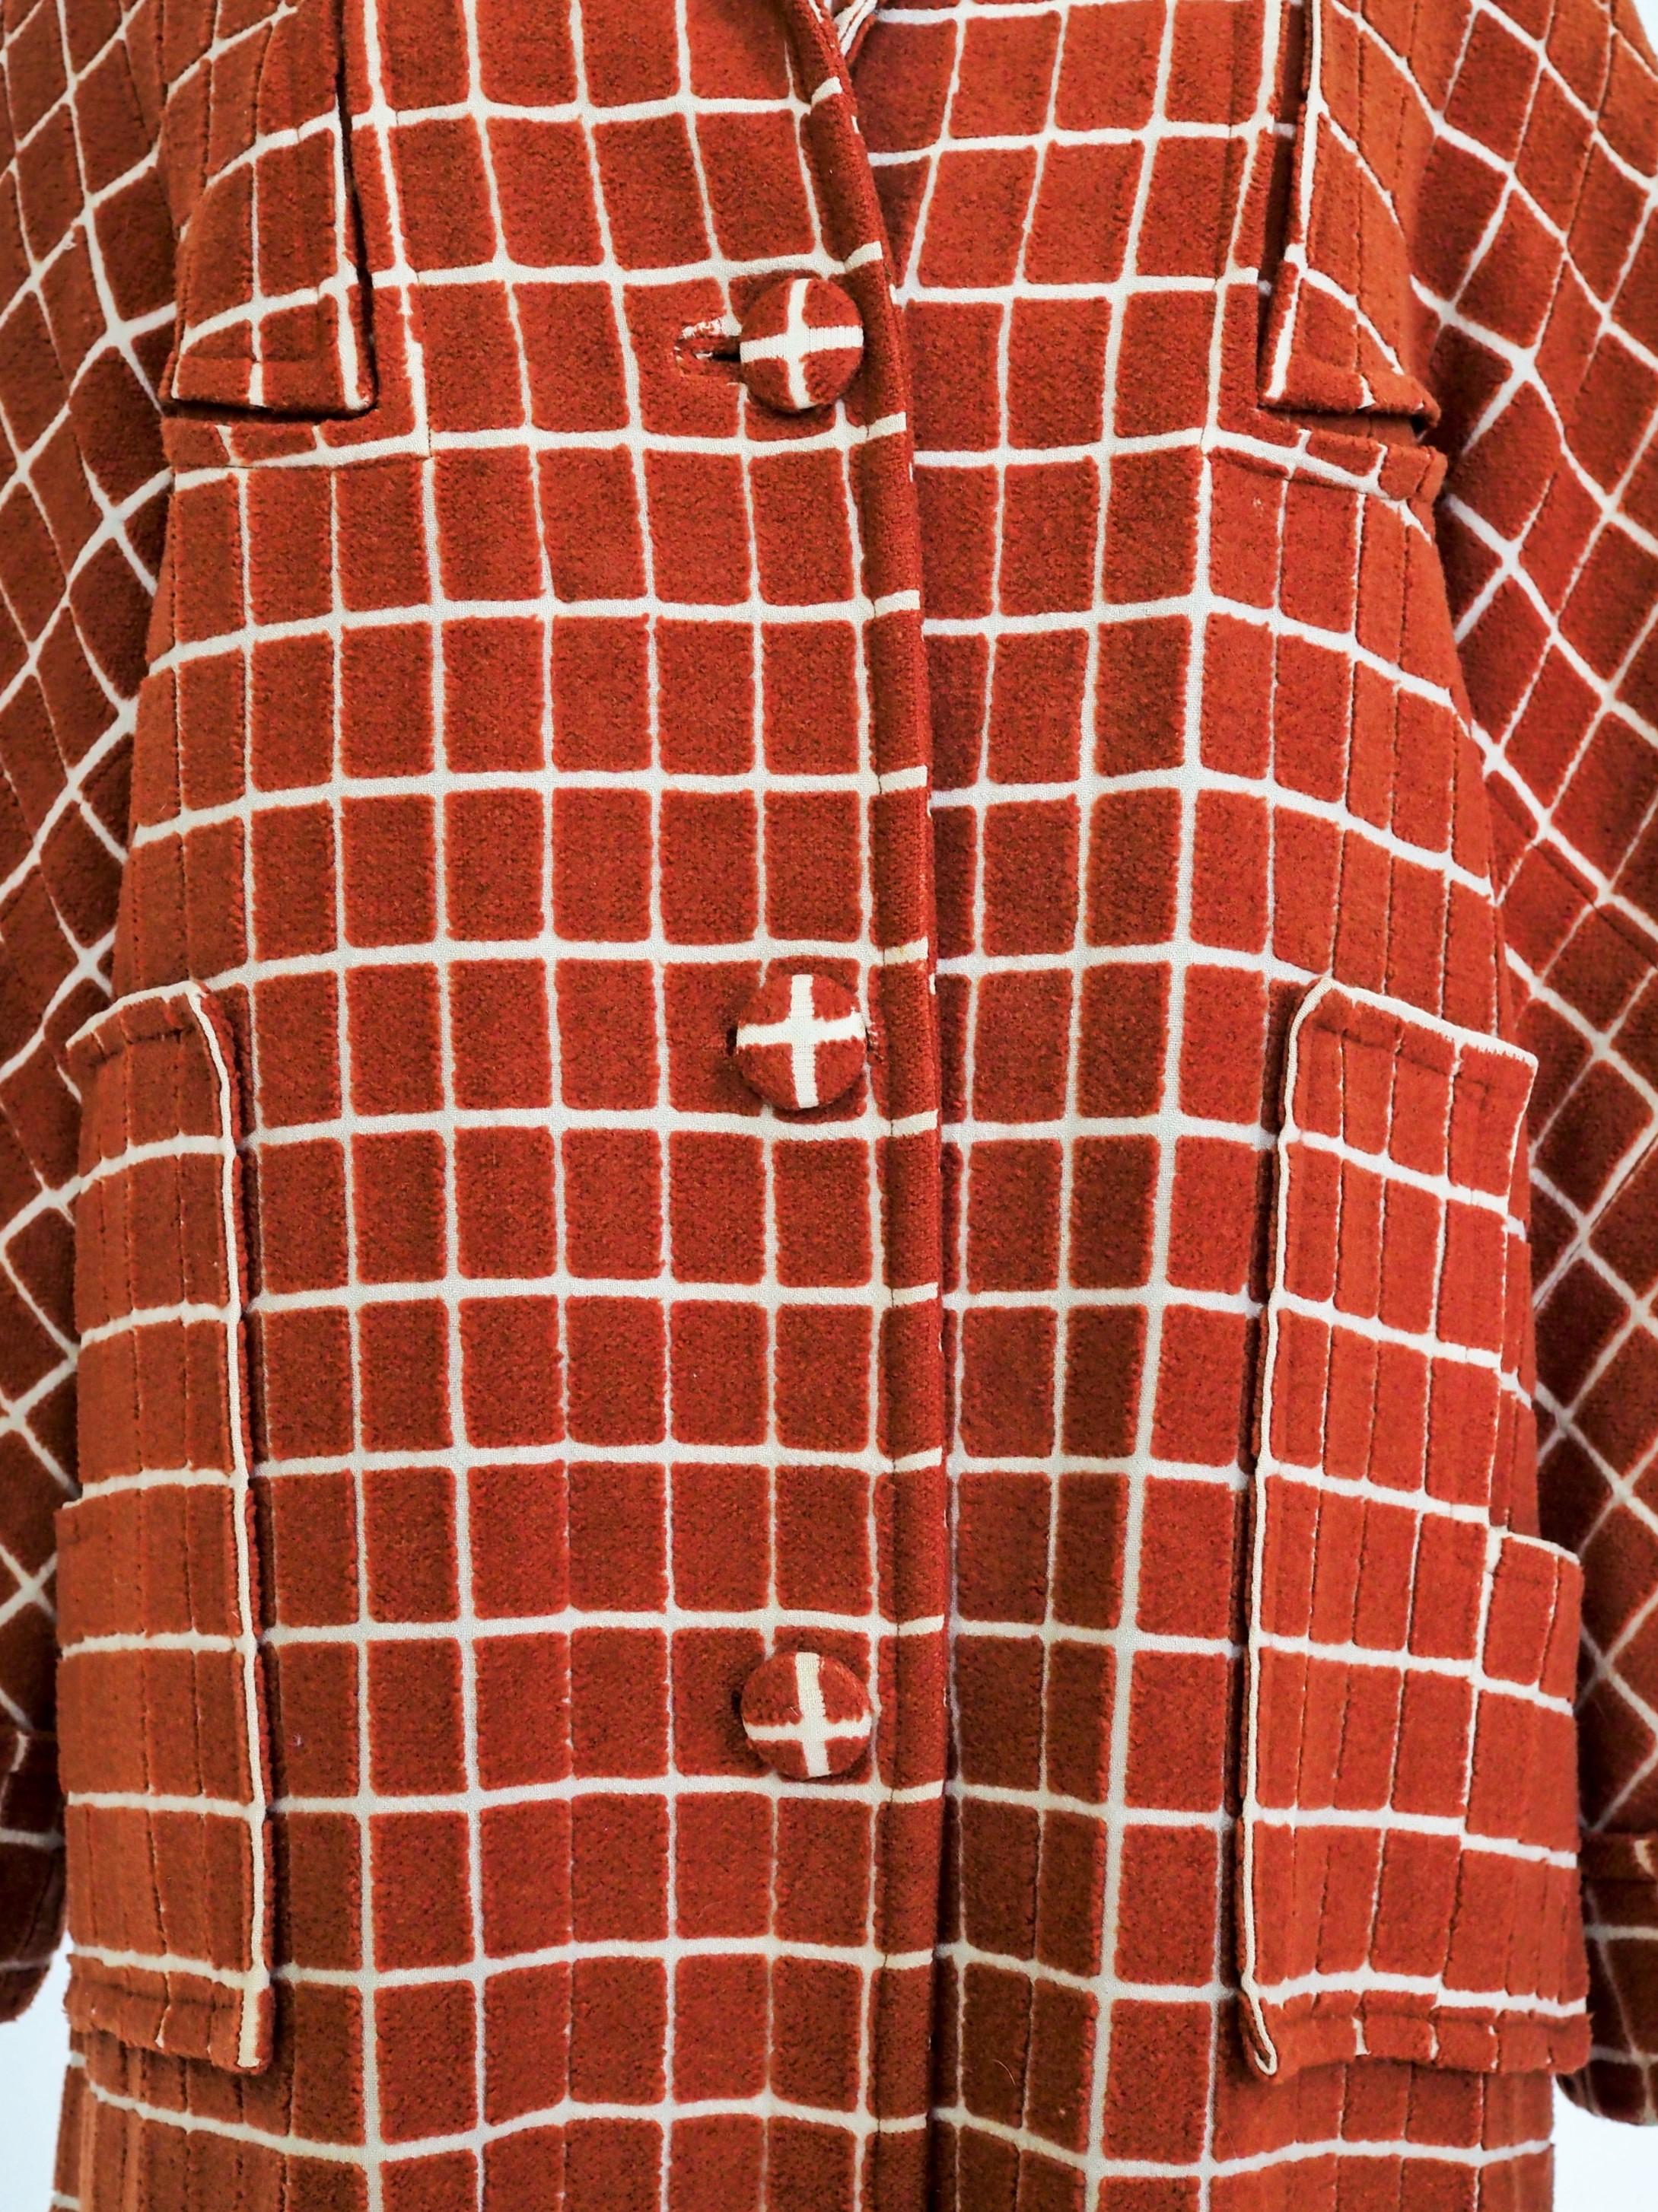 Um 1930

Frankreich

Schöner Art-Déco-Wintermantel aus Baumwolle und zugeschnittenem Samt in Ziegelrostfarbe mit kubistischer Grafik aus den 1930er Jahren. Lockerer Mantel mit kleinem Schalkragen, drei passenden Knöpfen, Raglanärmeln mit